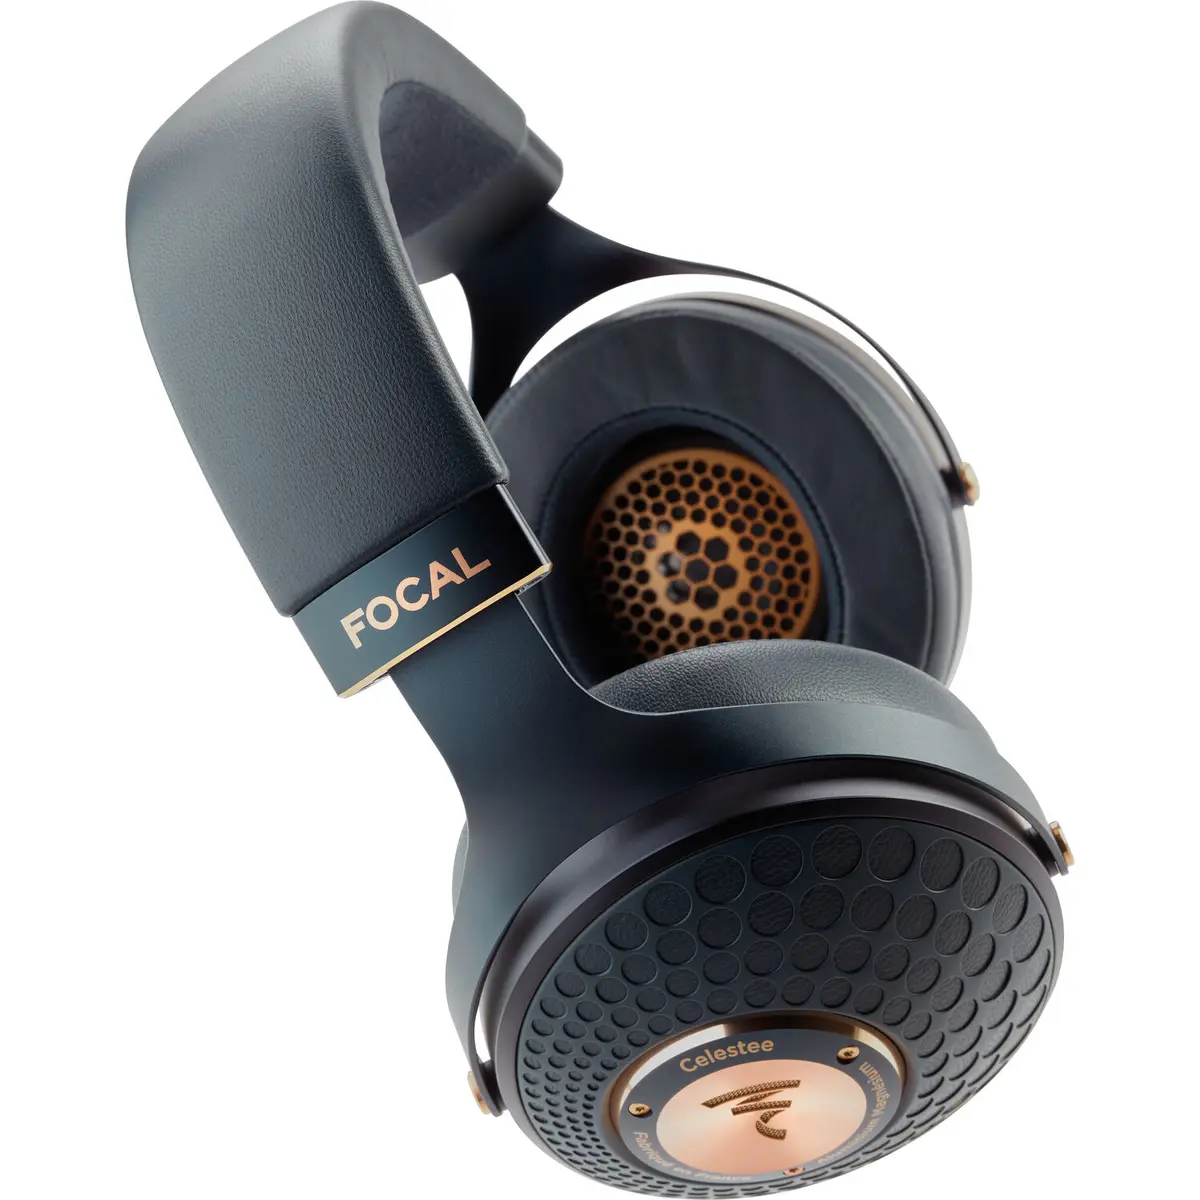 2. Focal Celestee High-end Over-ear headphones